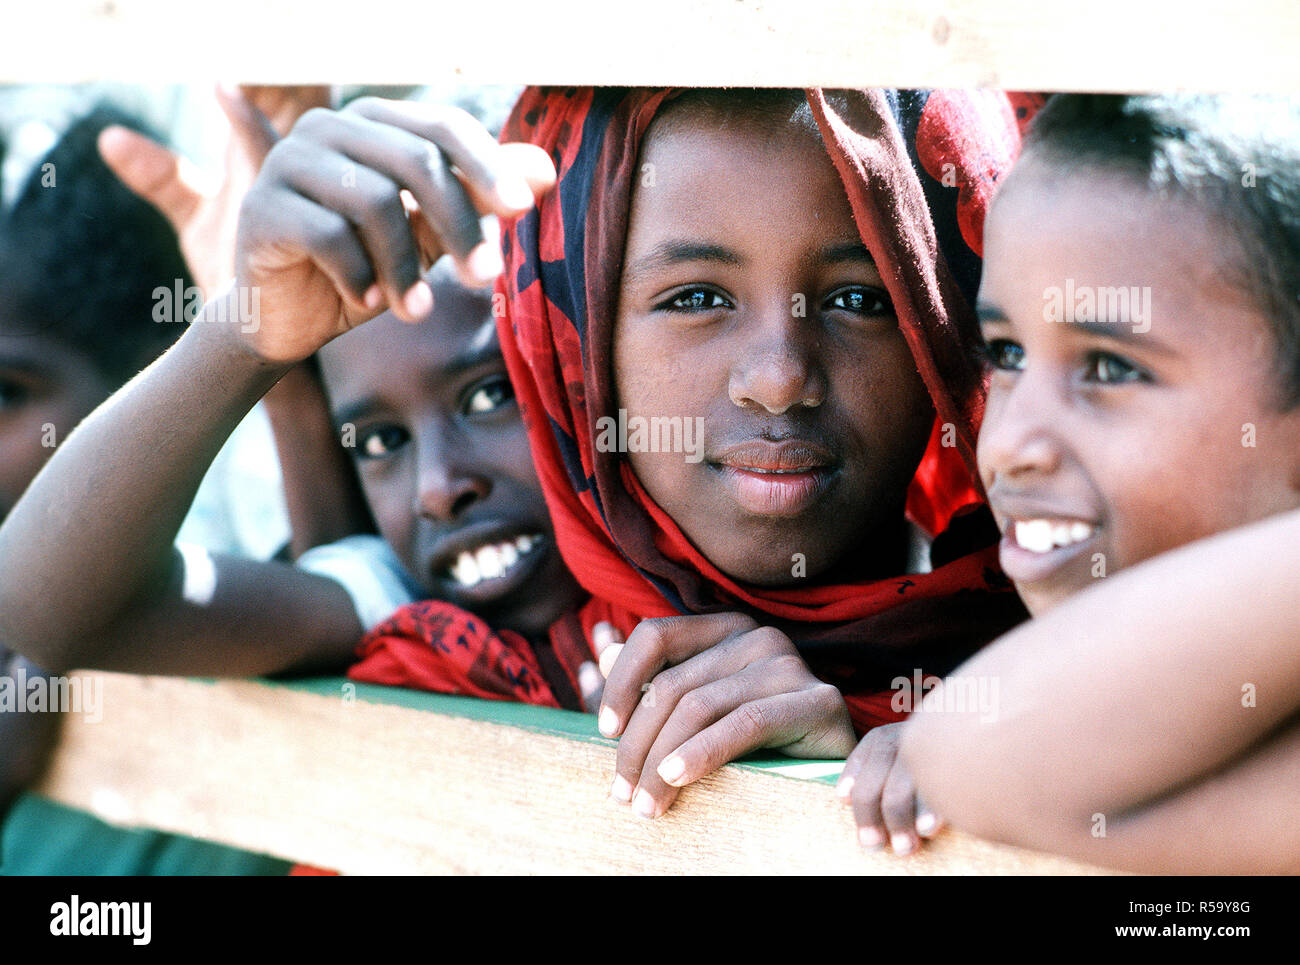 1993 - Los niños somalíes ver miembros del Batallón móvil de Construcción Naval 1 (NMCB-1) mientras trabajan para mejorar una escuela local durante el esfuerzo de socorro multinacional operación RESTAURAR LA ESPERANZA. Foto de stock